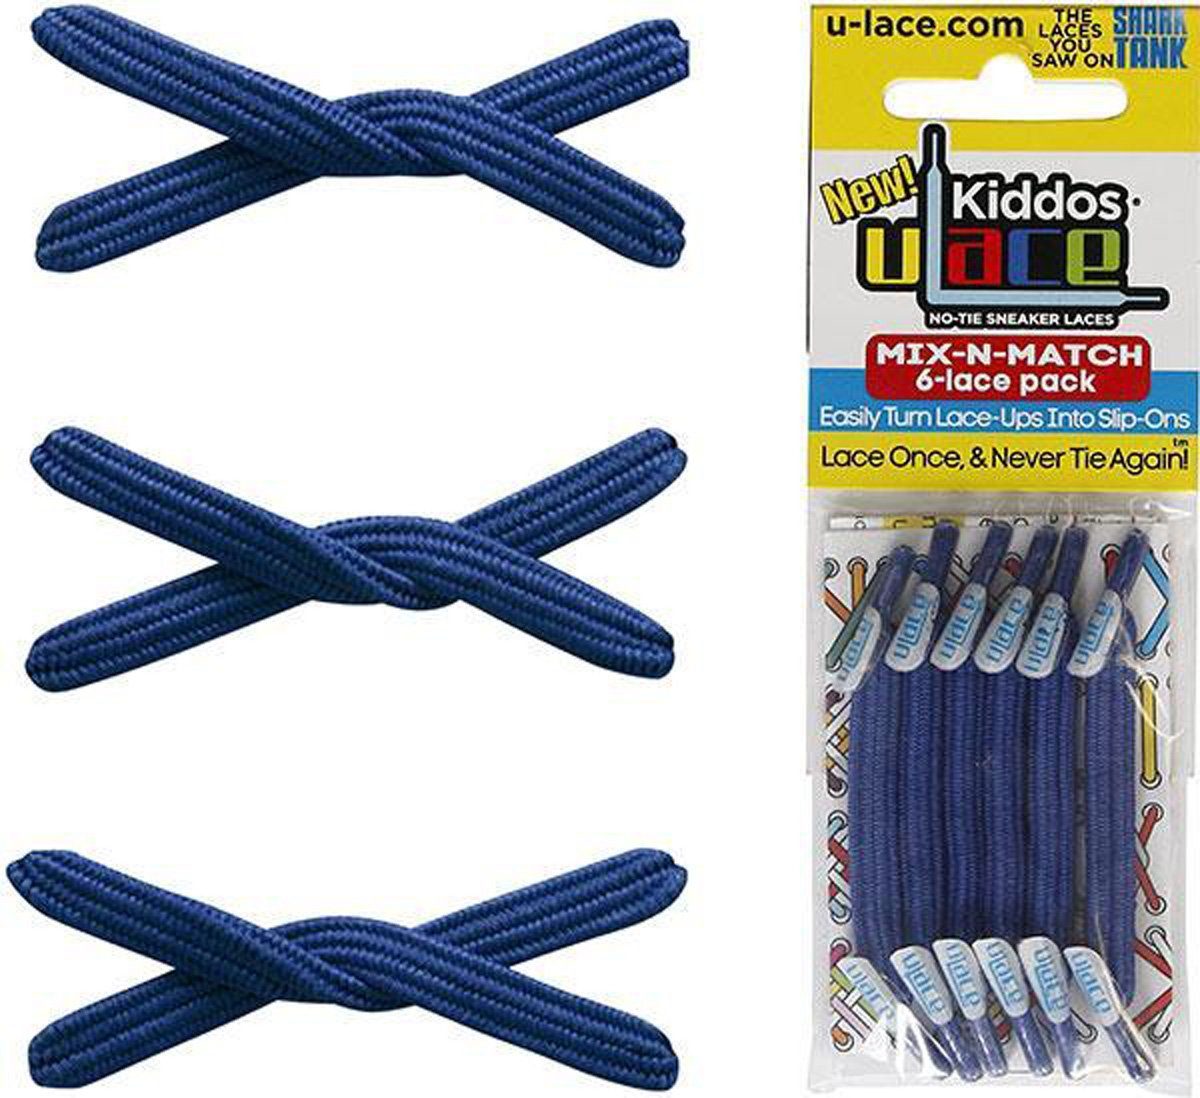 U-Laces Schnürsenkel Kiddos - Blue für elastische Royal Kinder Wiederhaken mit Schnürsenkel